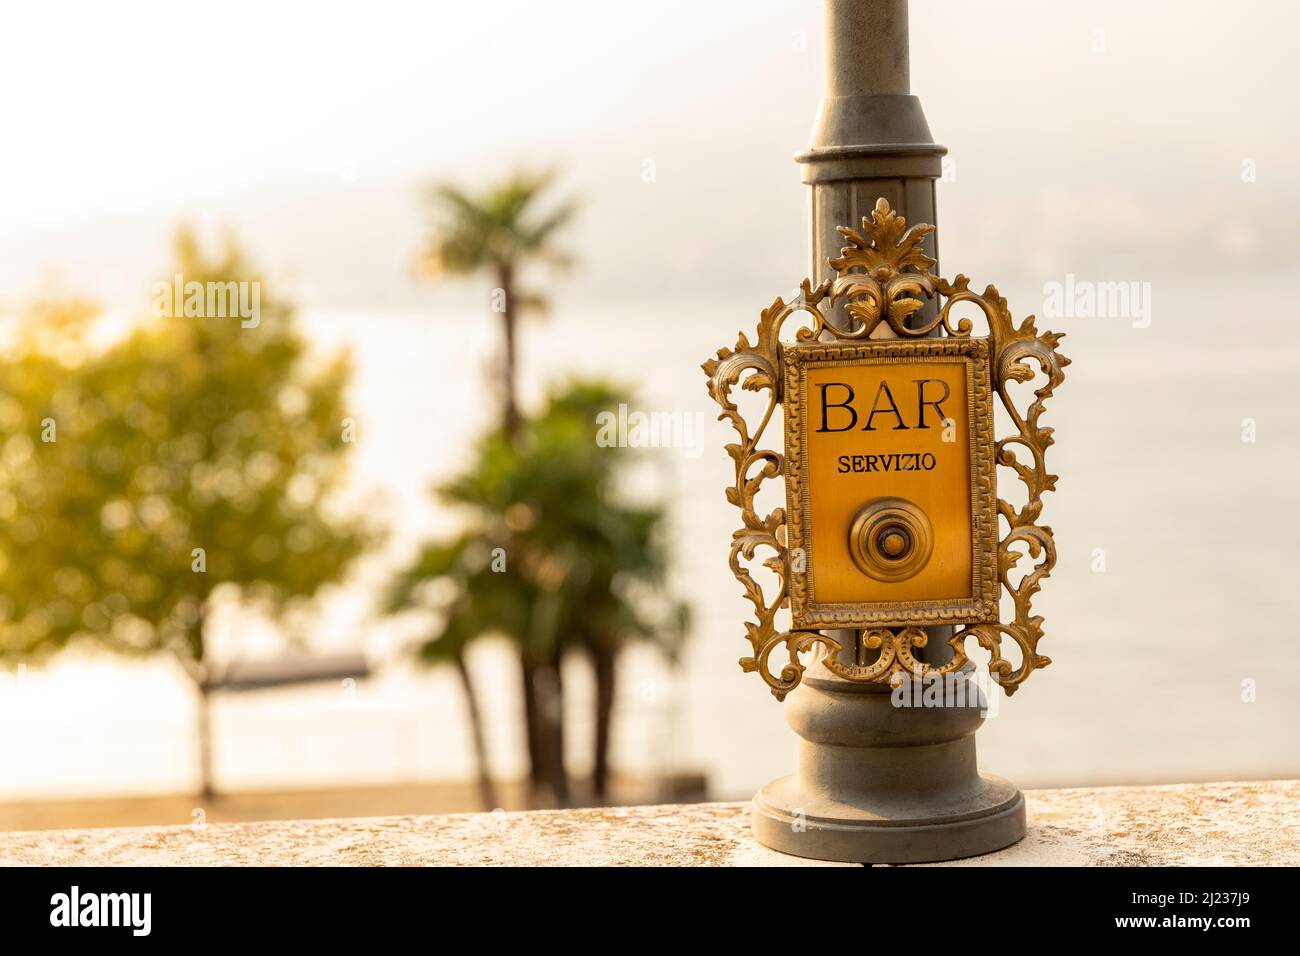 Italy, Lake Como, Bellagio, bar service button Stock Photo